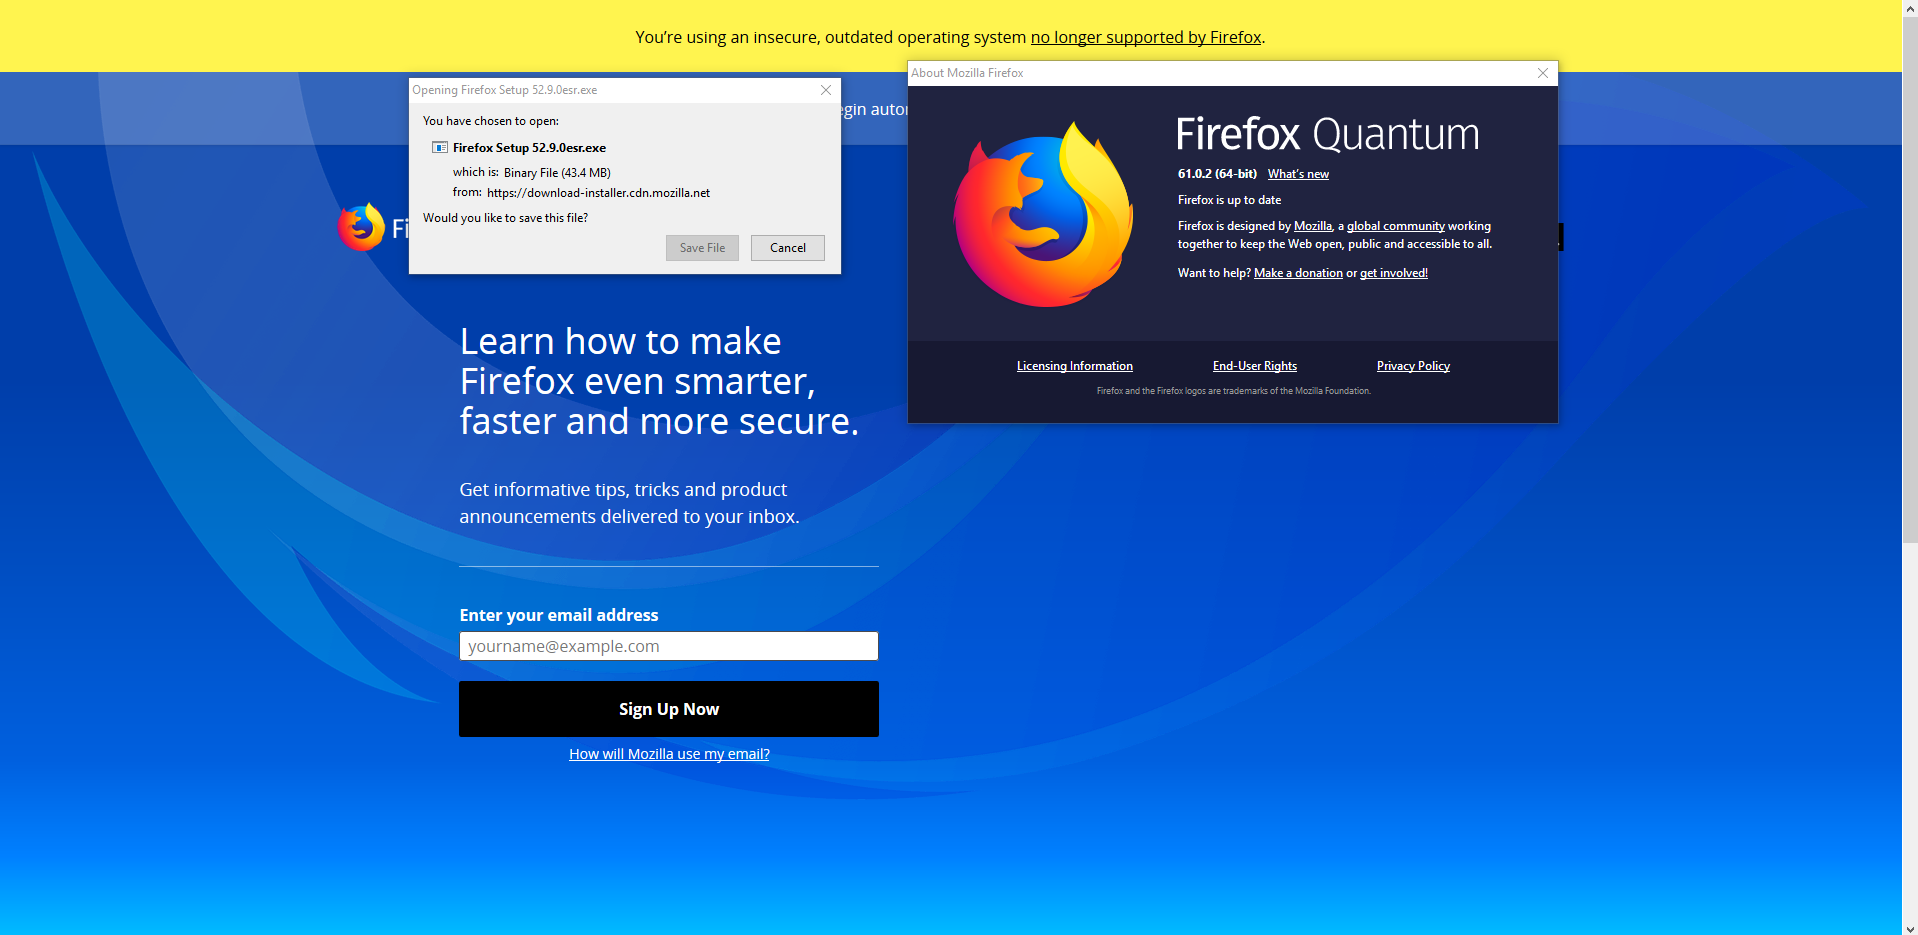 False update. Firefox 52.5.2.